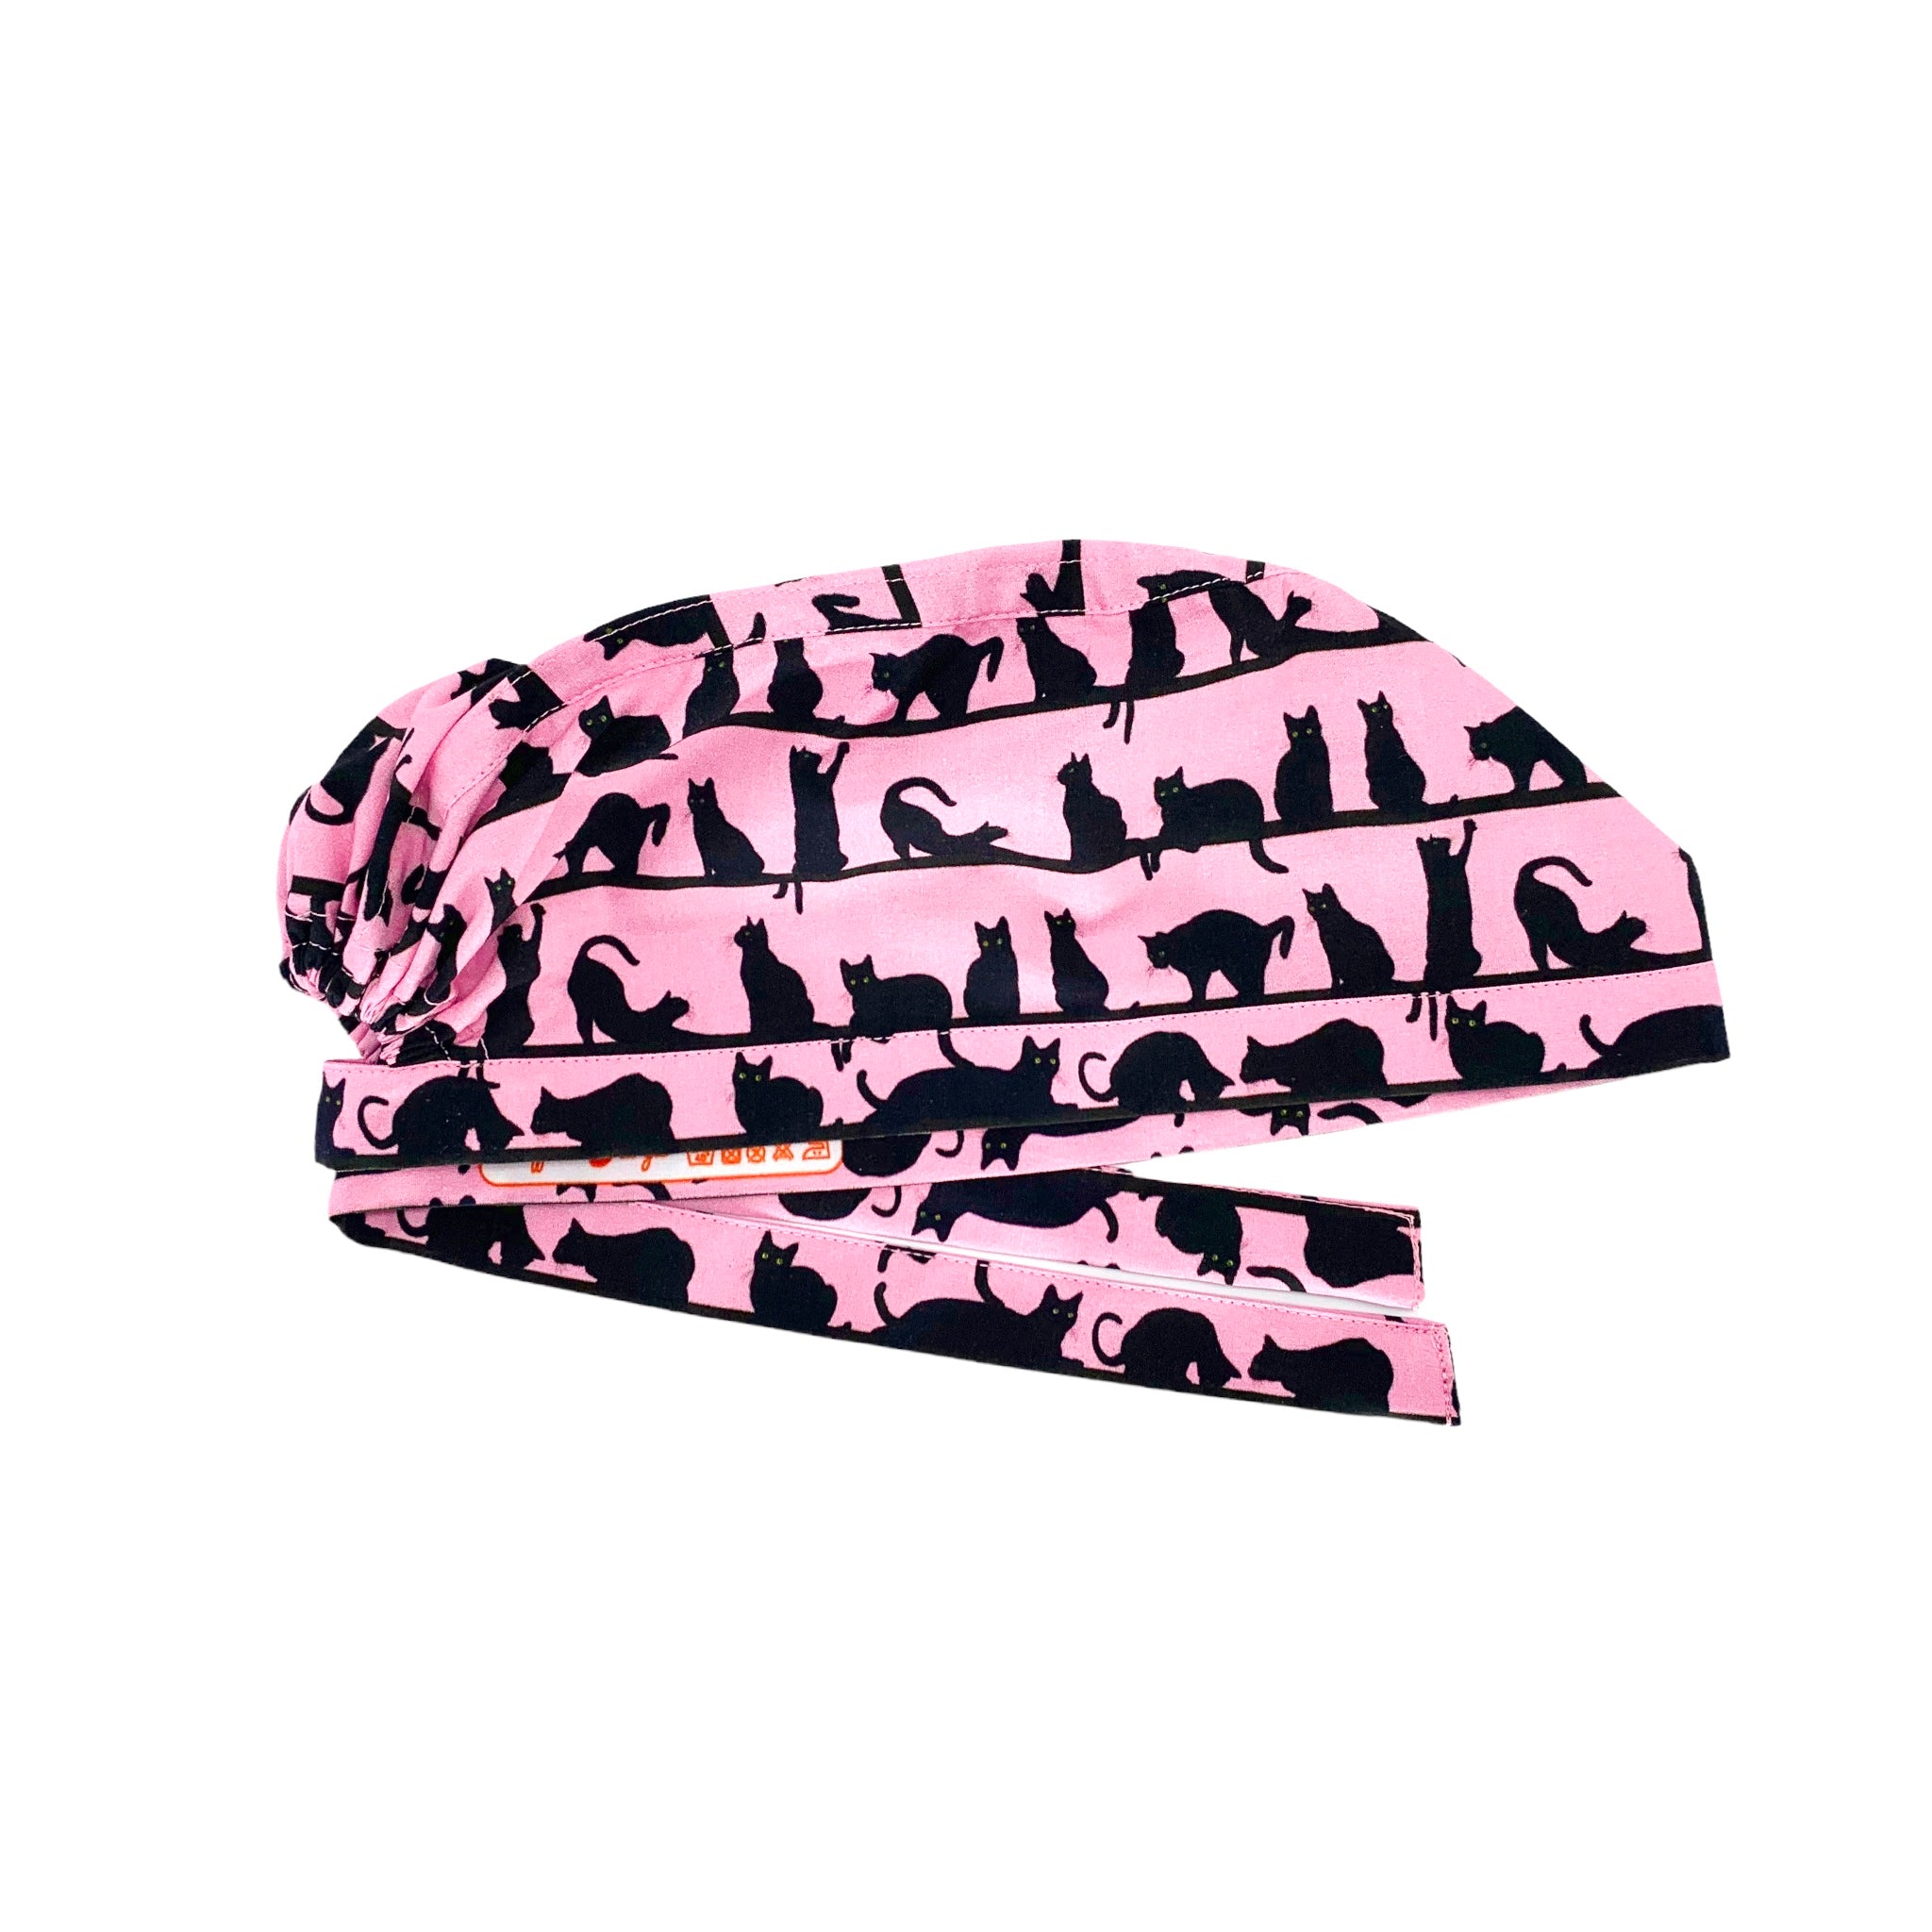 Cuffietta chirurgica con file di piccoli gatti neri realistici in pose tipicamente feline, sfondo rosa